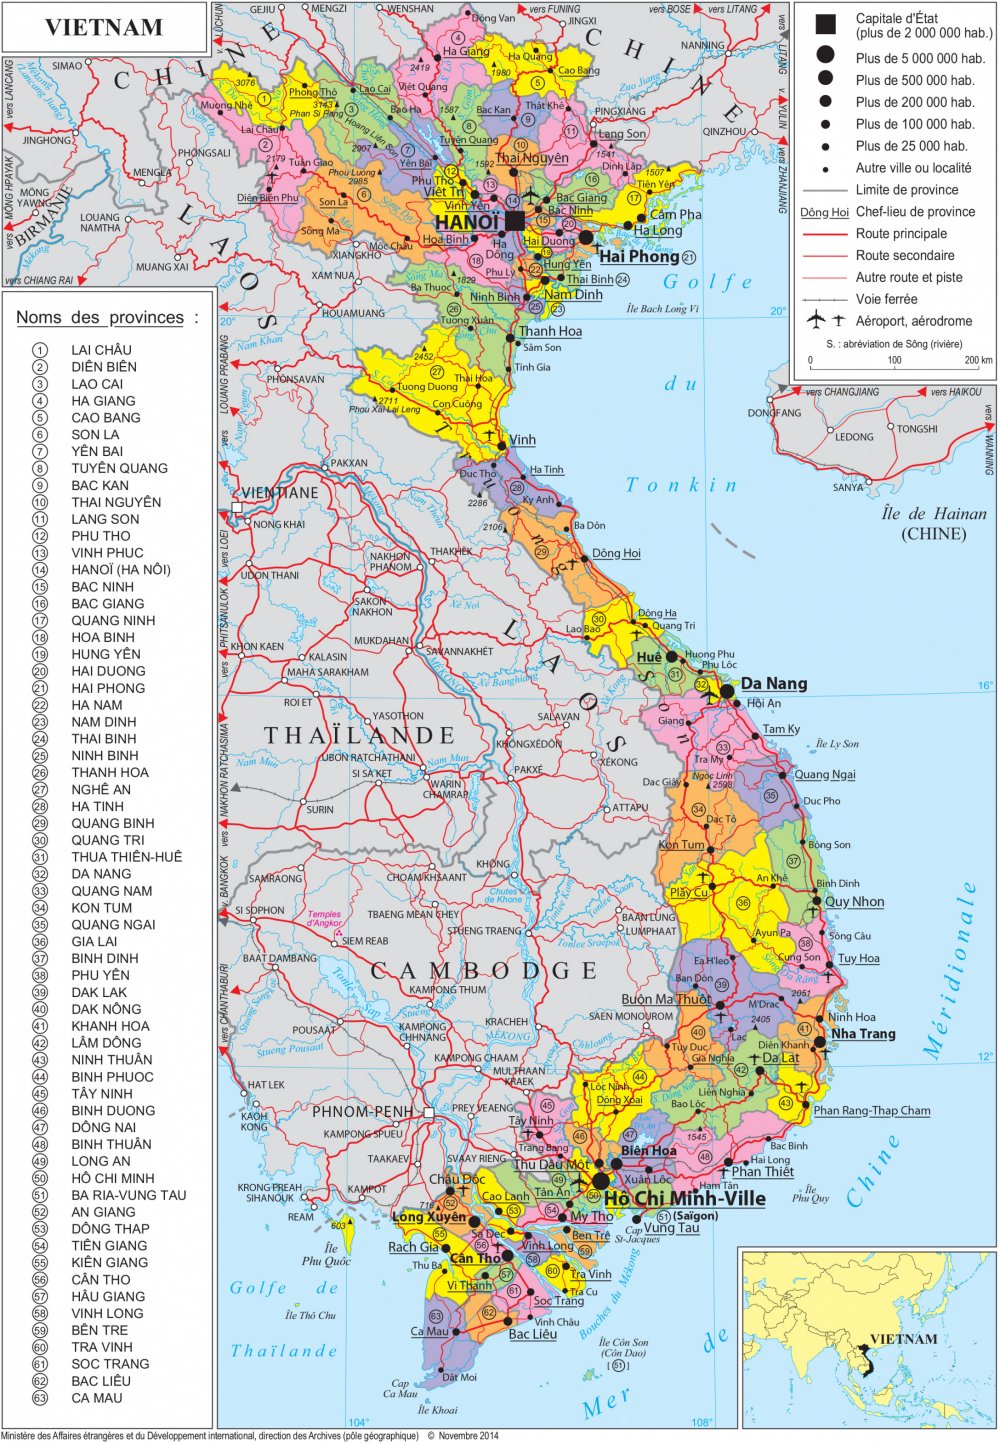 Bản đồ hành chính Việt Nam năm 2024 cho thấy rõ sự phát triển đáng kinh ngạc của đất nước. Những thay đổi trong cơ cấu hành chính và công nghệ đã giúp Việt Nam trưởng thành và trở thành một trong những quốc gia đáng sống nhất trên thế giới.